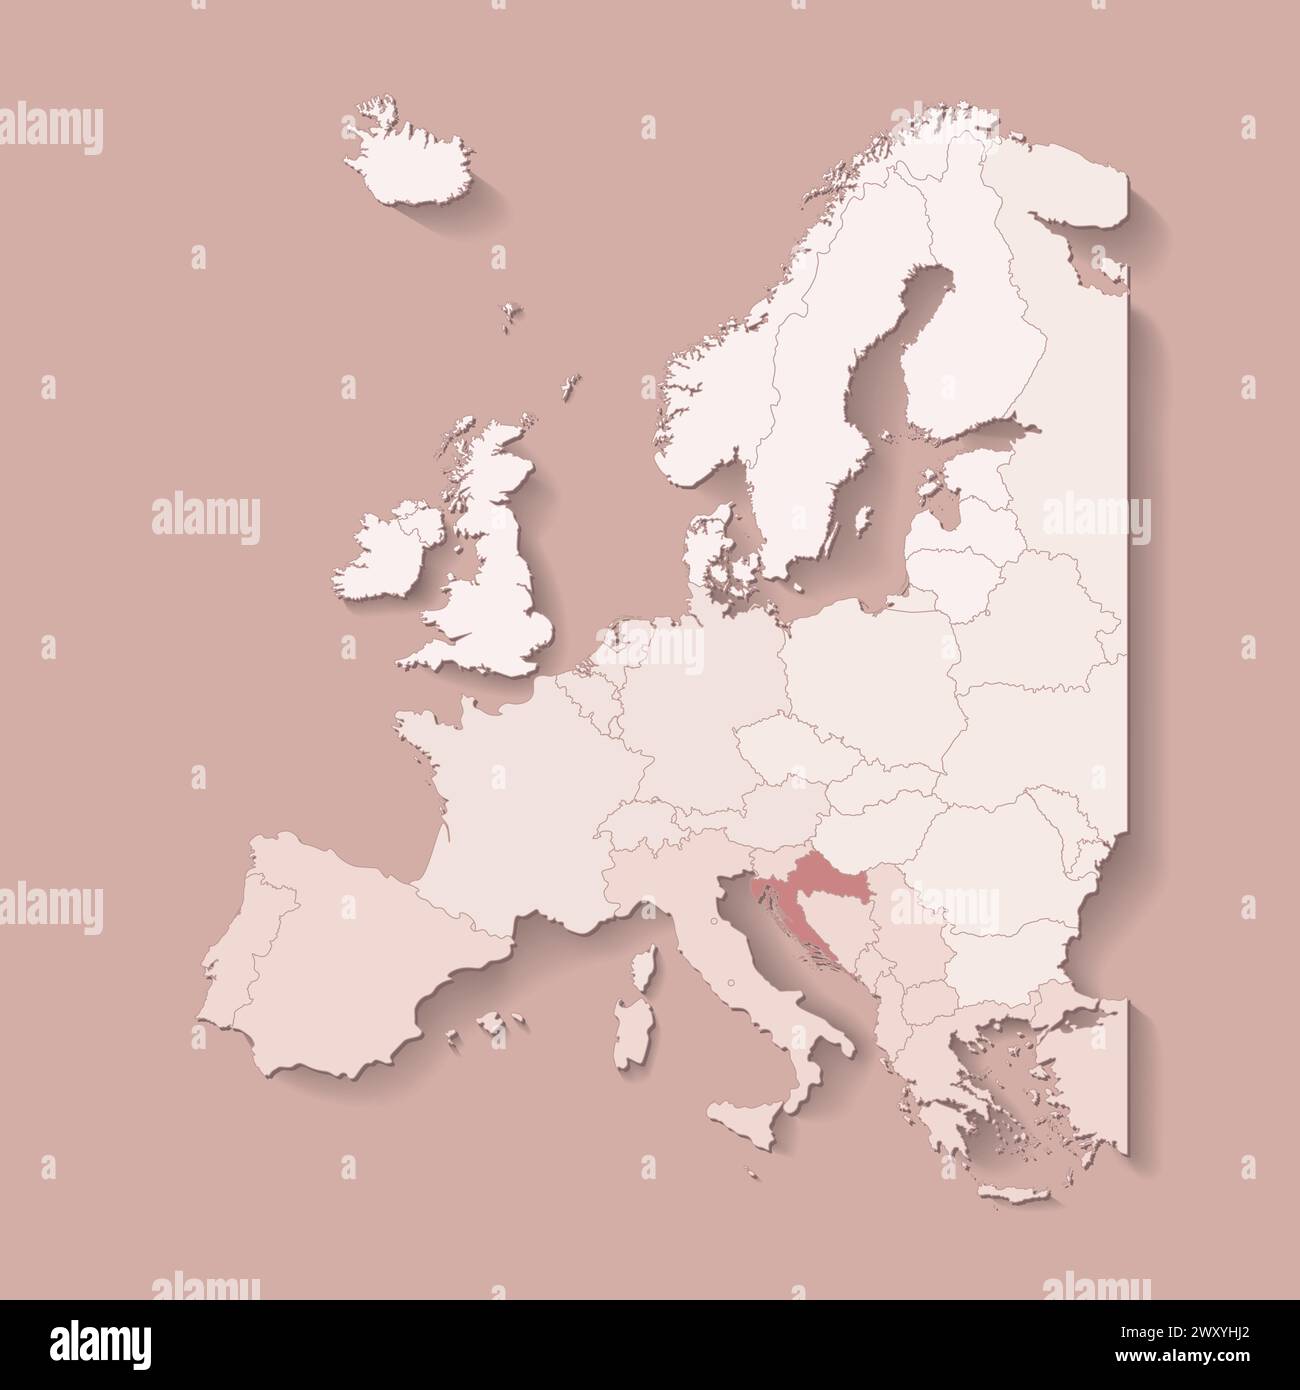 Illustrazione vettoriale con terra europea con confini di stati e paese contrassegnato Croazia. Mappa politica di colore marrone con occidentale, sud e così via Illustrazione Vettoriale